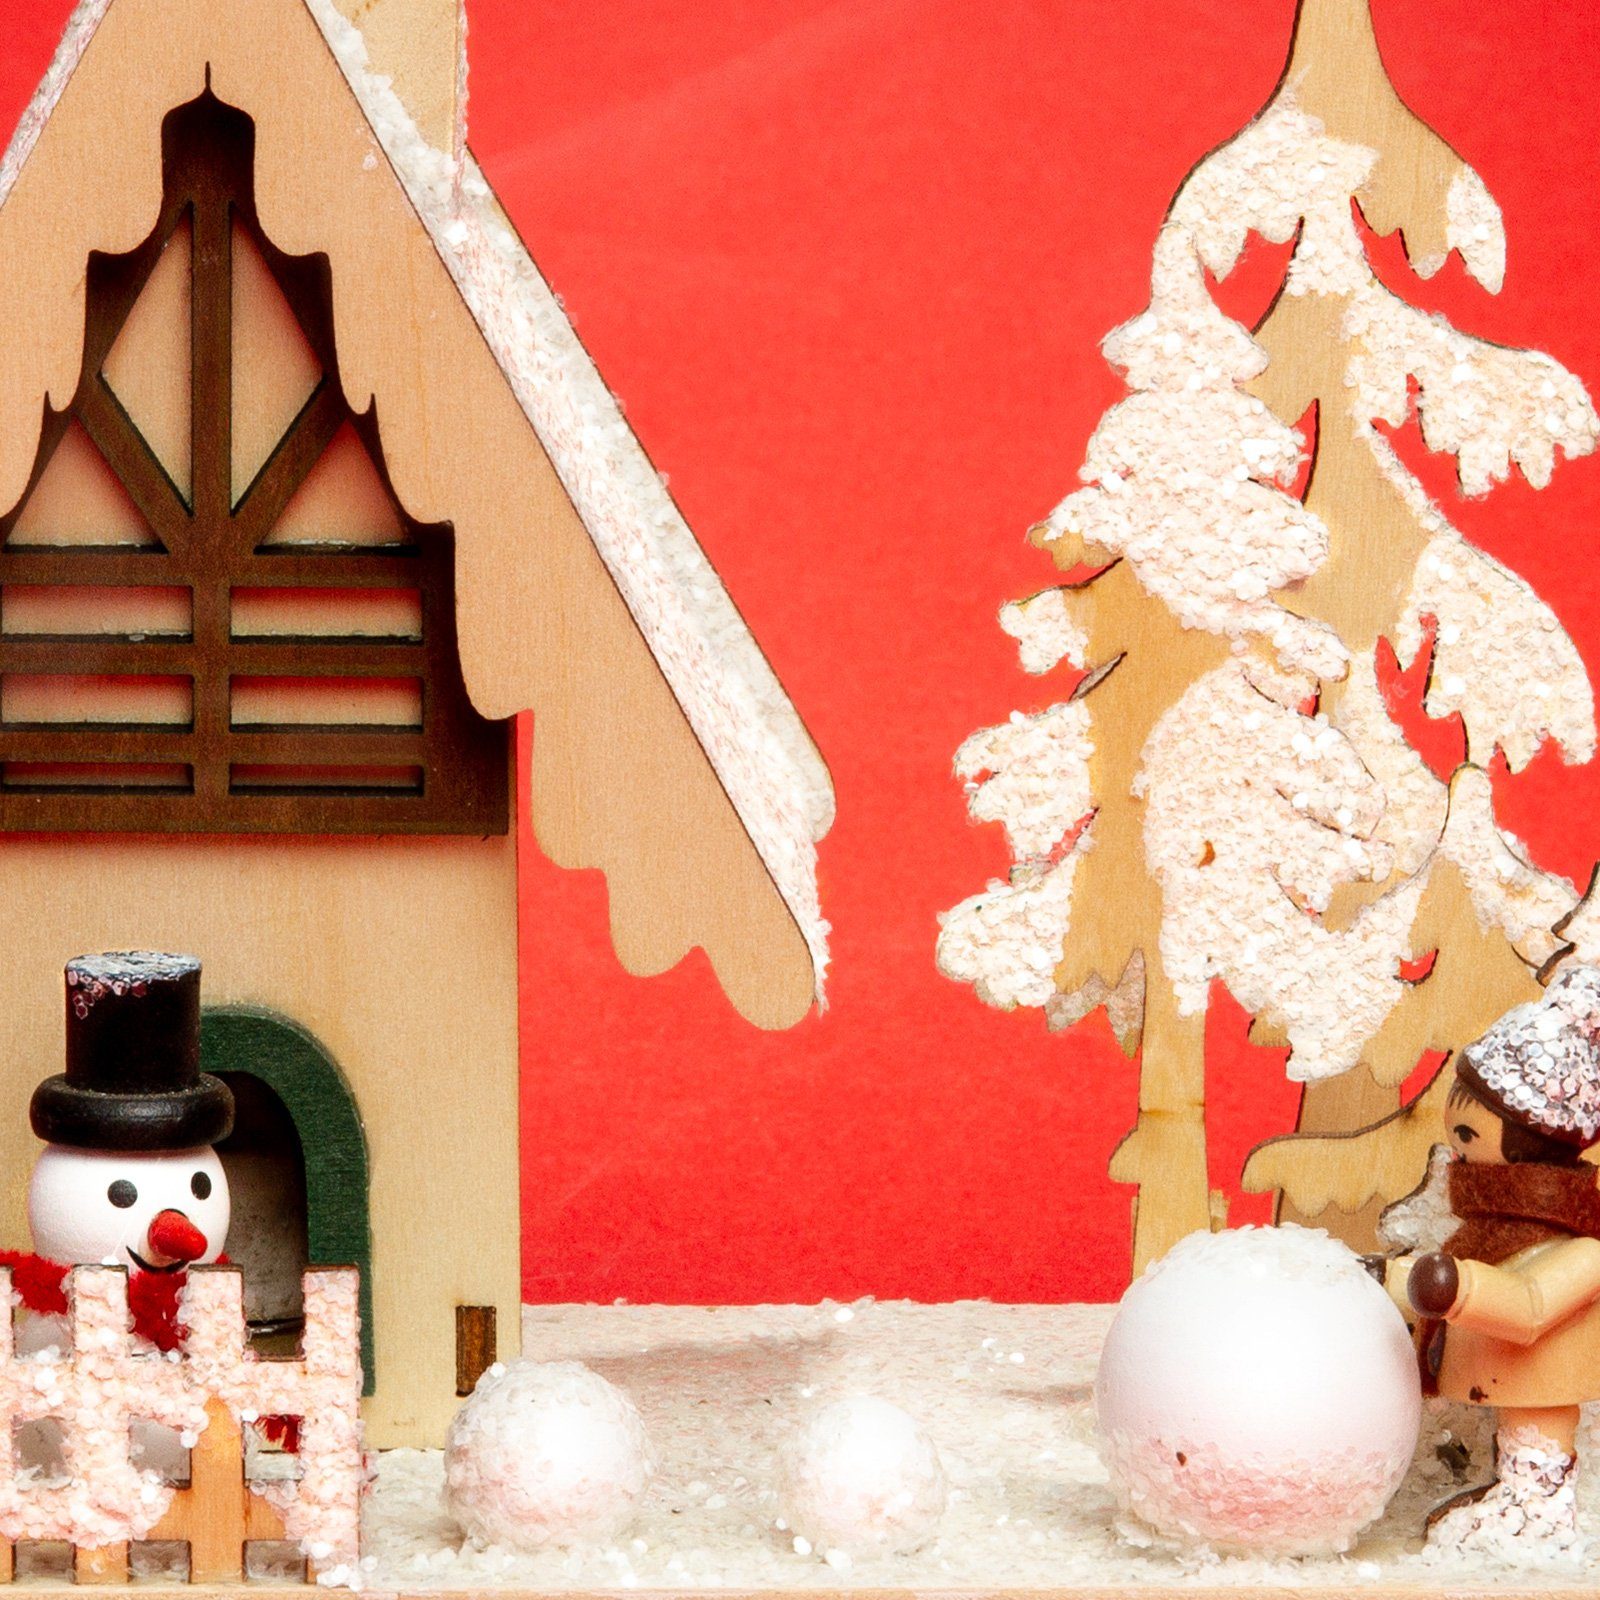 mit SIKORA großes Holz aus Weihnachtsfigur RM-Z04 Winterlandschaft Räucherhaus